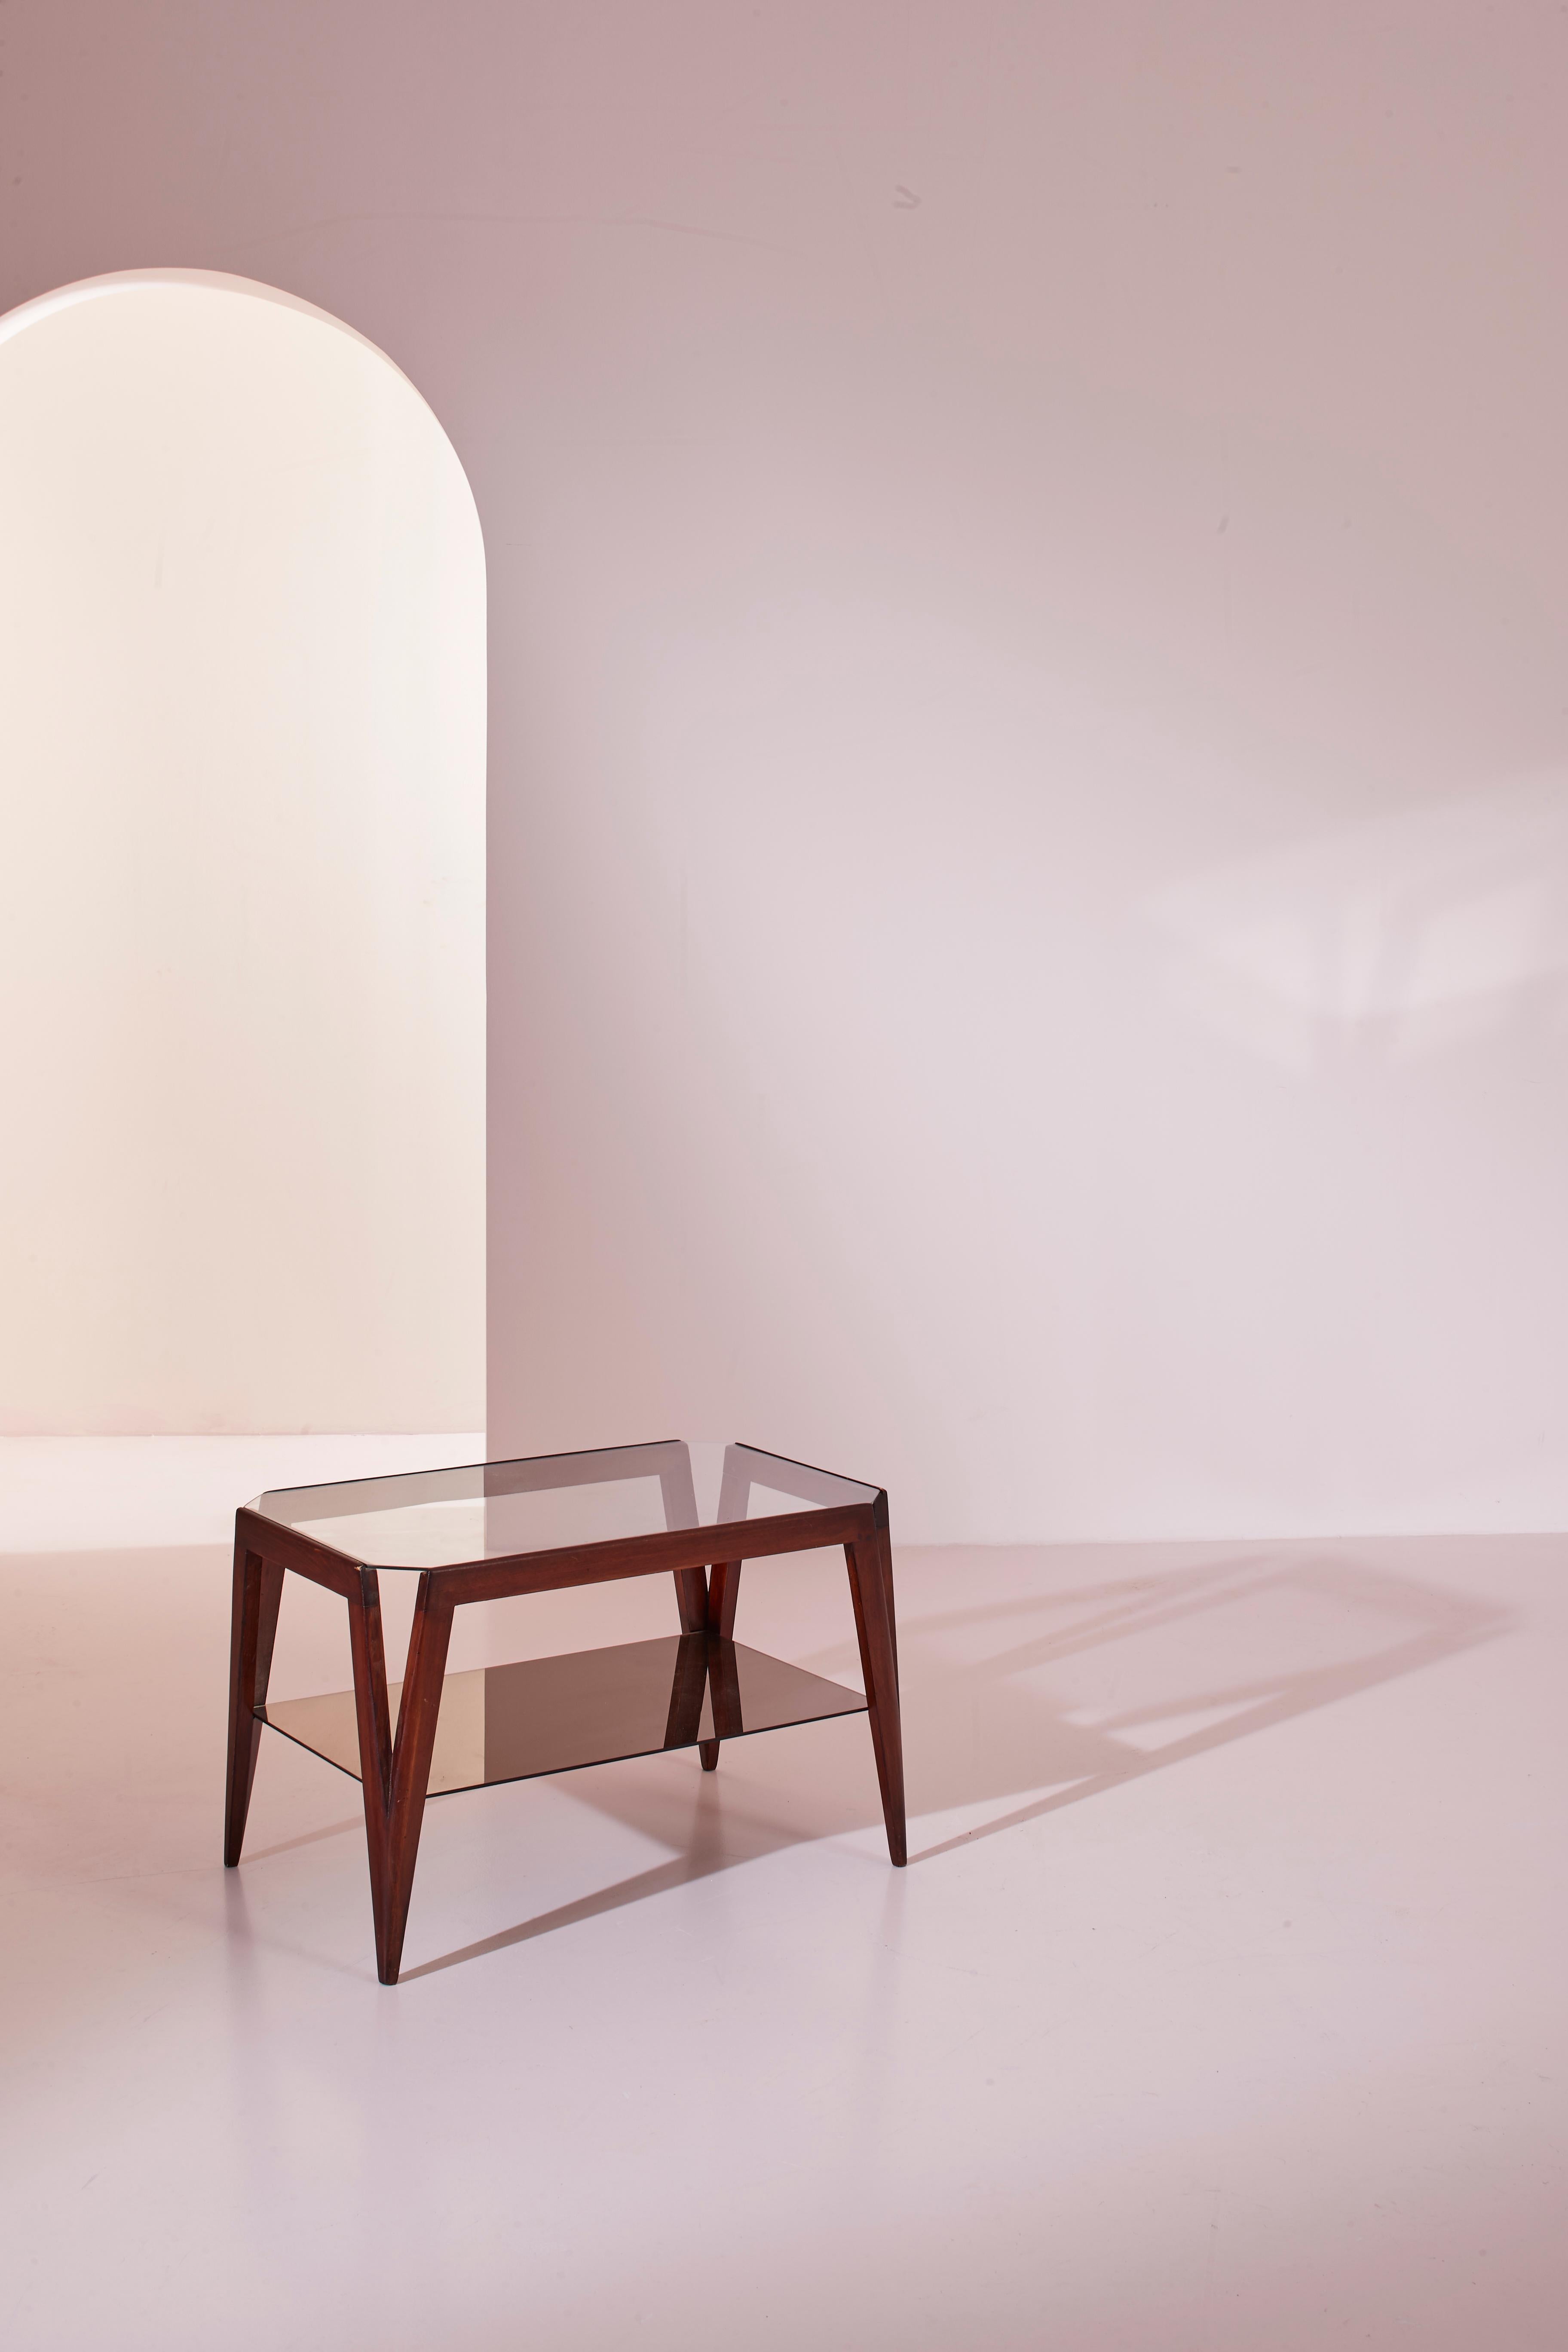 Cette belle table basse, fabriquée en Italie dans les années 1950 en bois teinté de noyer et en verre, apparaît comme une pièce où l'on dirait qu'un crayon a tracé joyeusement une succession rapide d'angles et d'arêtes aigus. Celles-ci ont